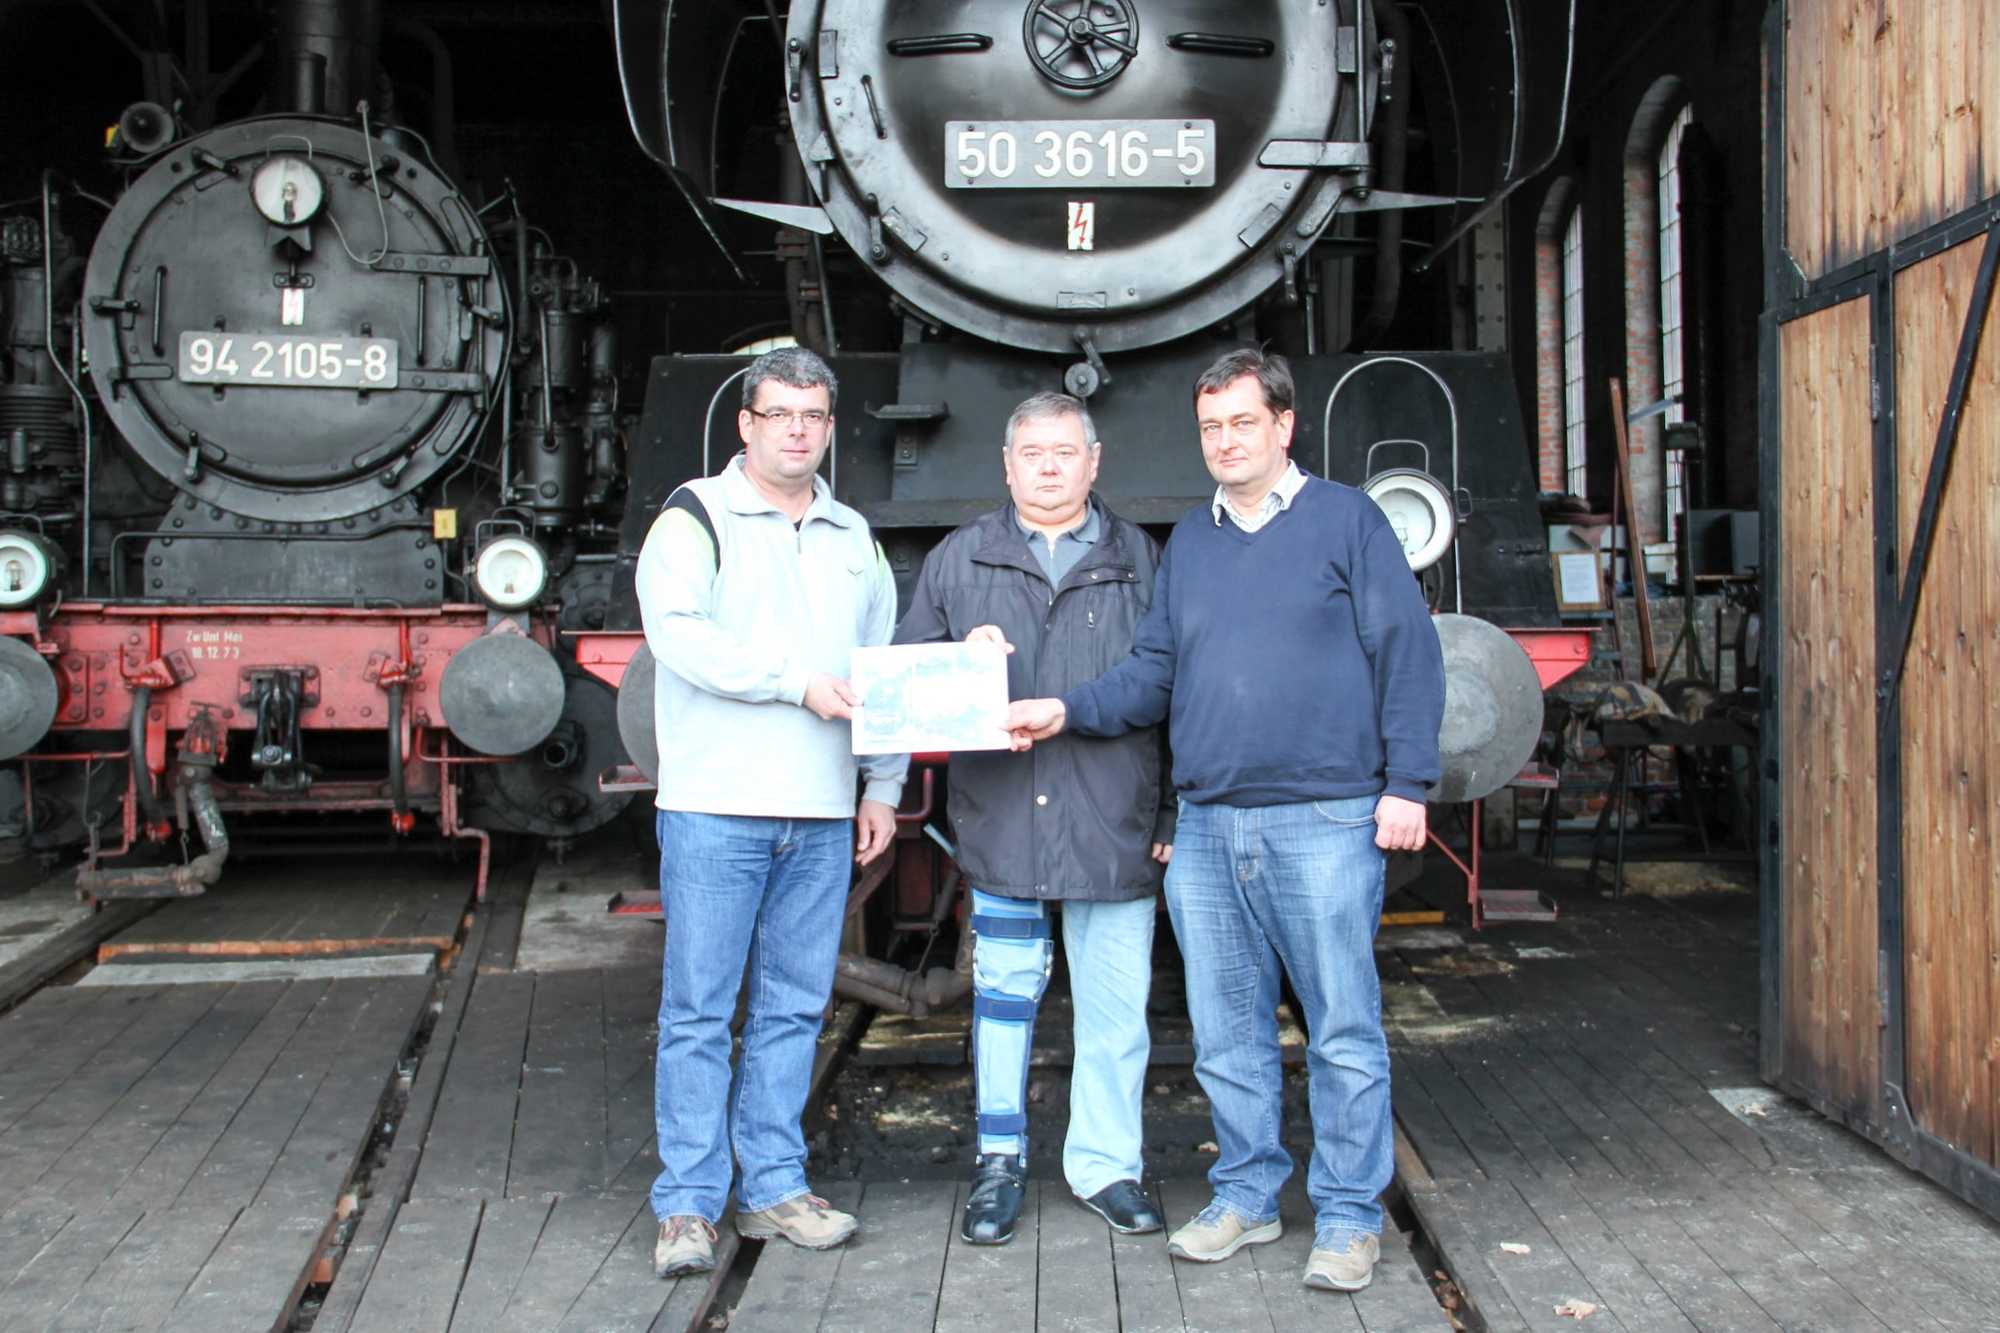 Vor der Lok 50 3616-5 überreicht Joachim Gall seine Spende an die Vertreter des Vereins Sächsischer Eisenbahnfreunde e.V.